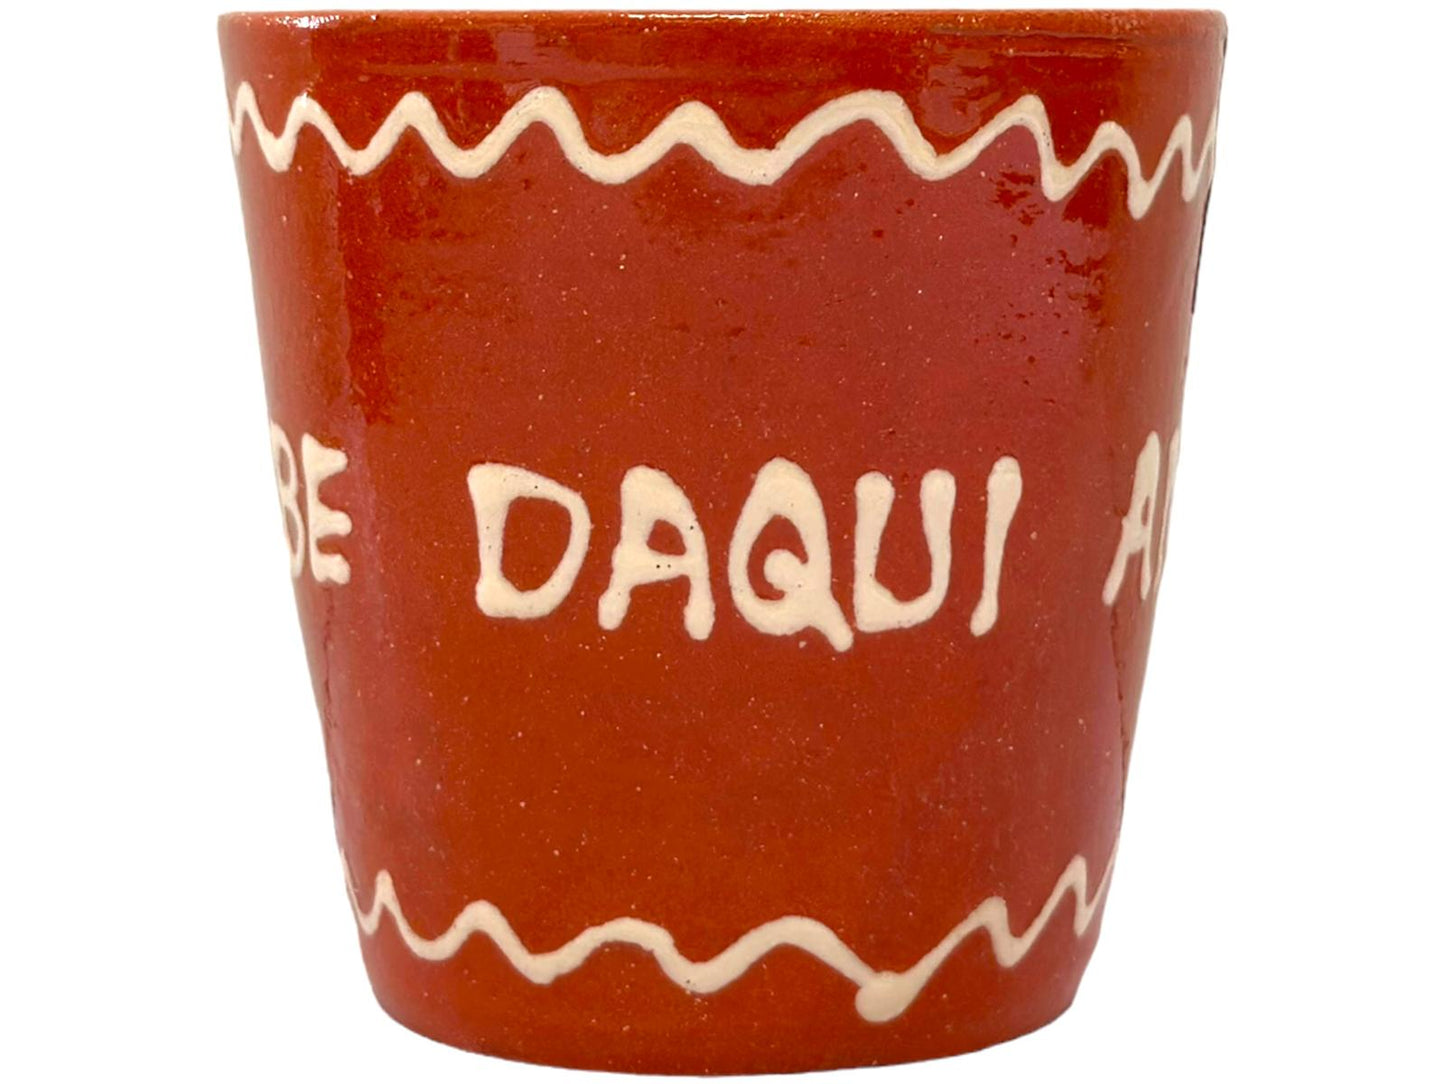 Edgar Picas Copo Direito Bebe Daqui Amiga Portuguese Terracotta Mug 8.5cm x 9cm